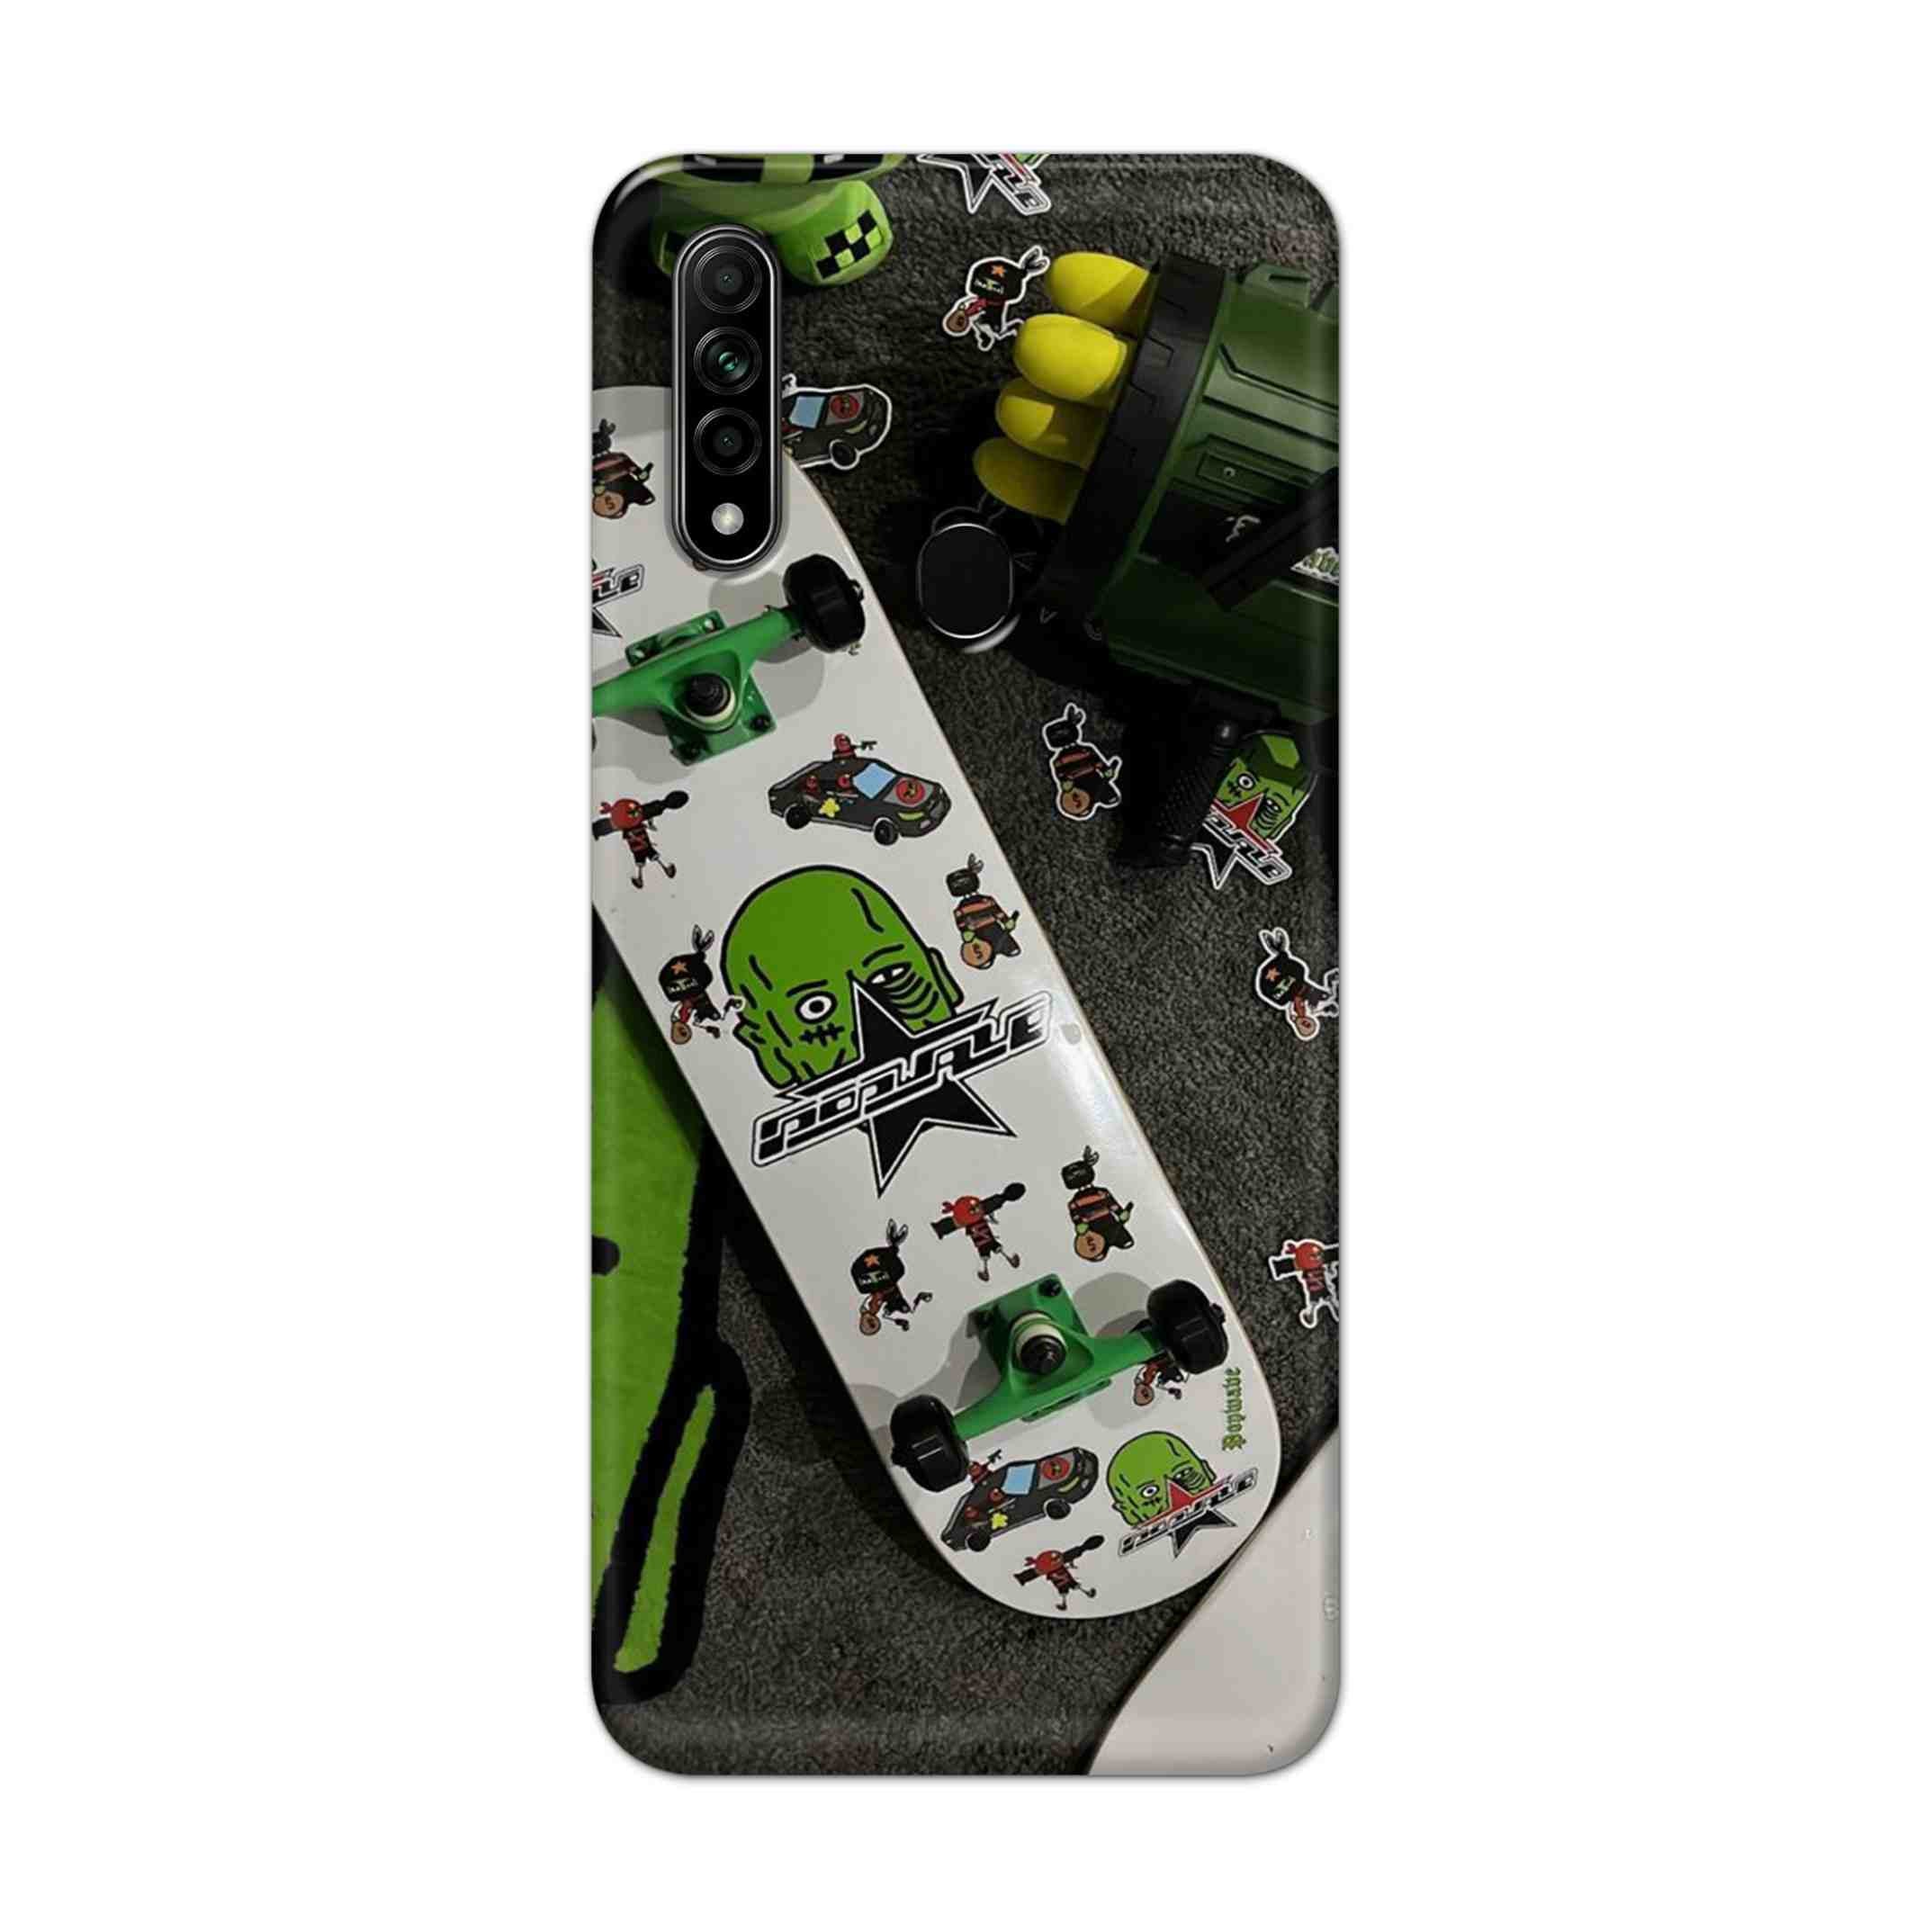 Buy Hulk Skateboard Hard Back Mobile Phone Case Cover For Oppo A31 (2020) Online